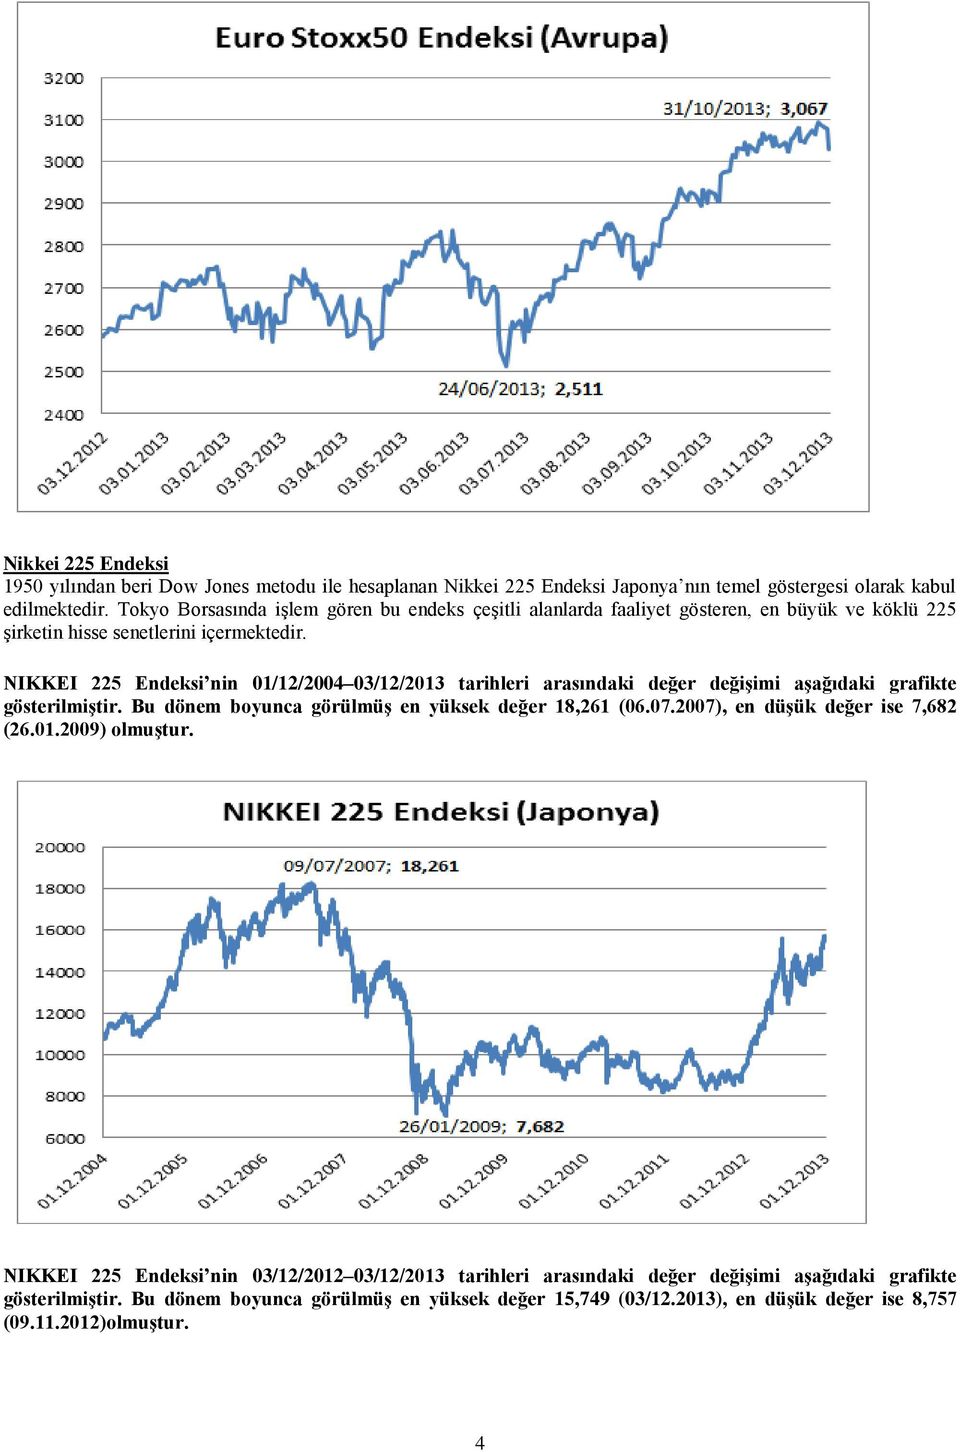 NIKKEI 225 Endeksi nin 01/12/2004 03/12/2013 tarihleri arasındaki değer değişimi aşağıdaki grafikte gösterilmiştir. Bu dönem boyunca görülmüş en yüksek değer 18,261 (06.07.